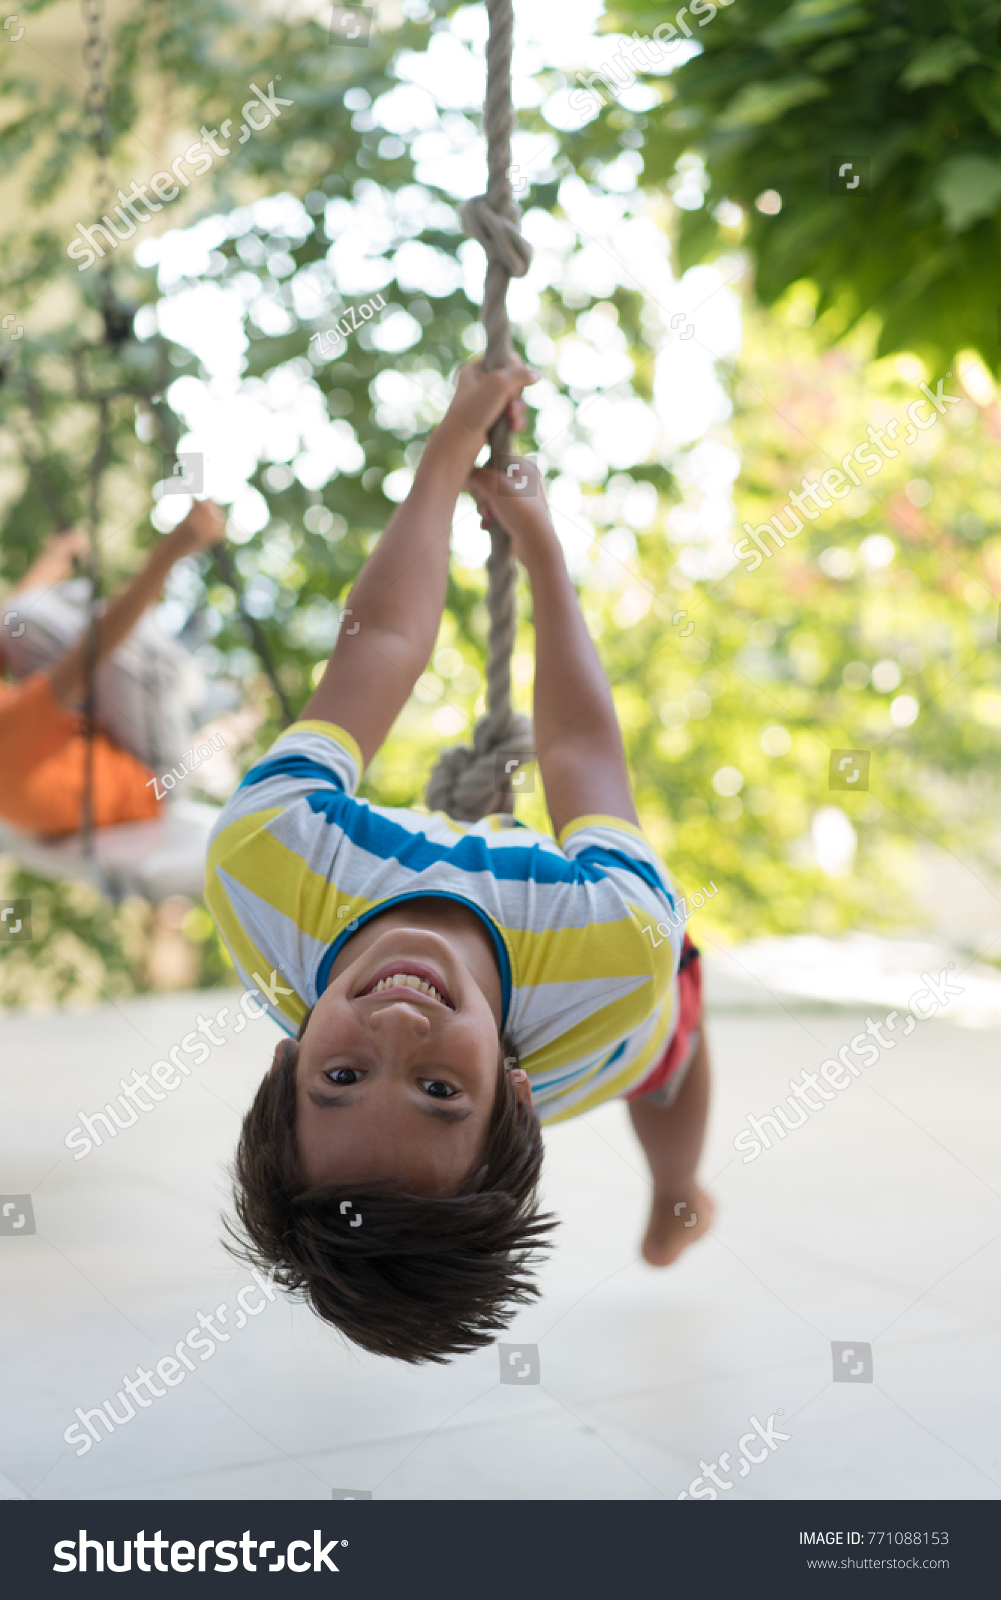 Cute happy little boy upside down on swing rope #771088153